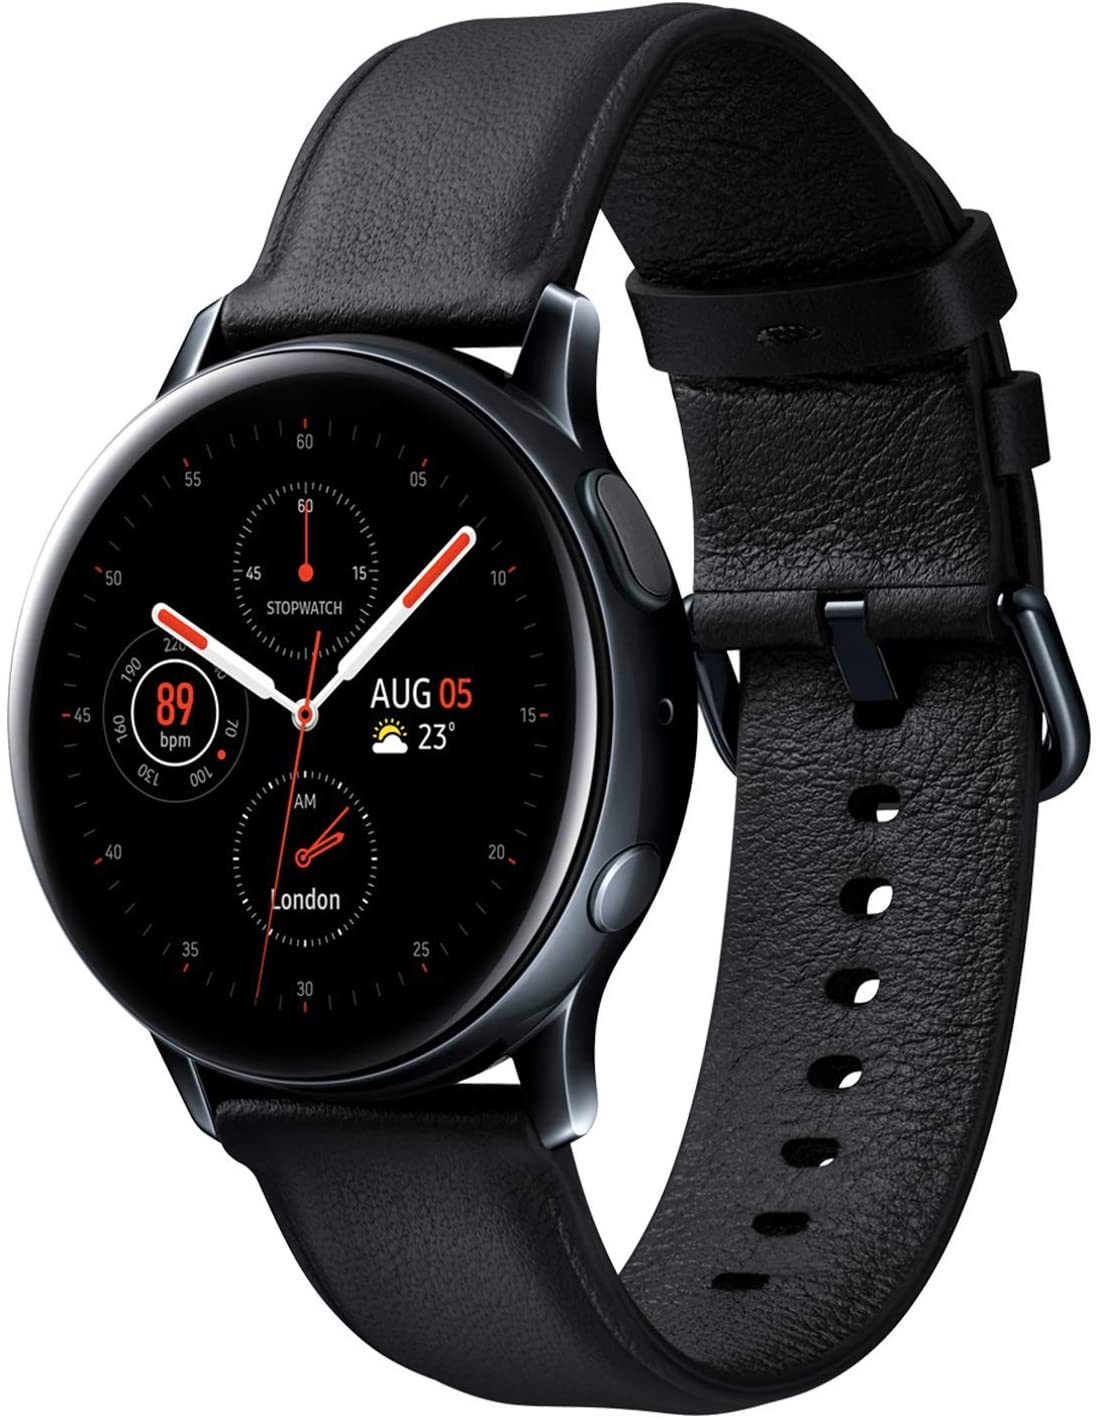 【お買い得】【数量限定】Galaxy Watch Active2 / Stainless steel/ / 40mm [galaxy ギャラクシー 純正スマートウォッチ 国内正規品] SM-R830NSKAXJP SM-R830NSSAXJP